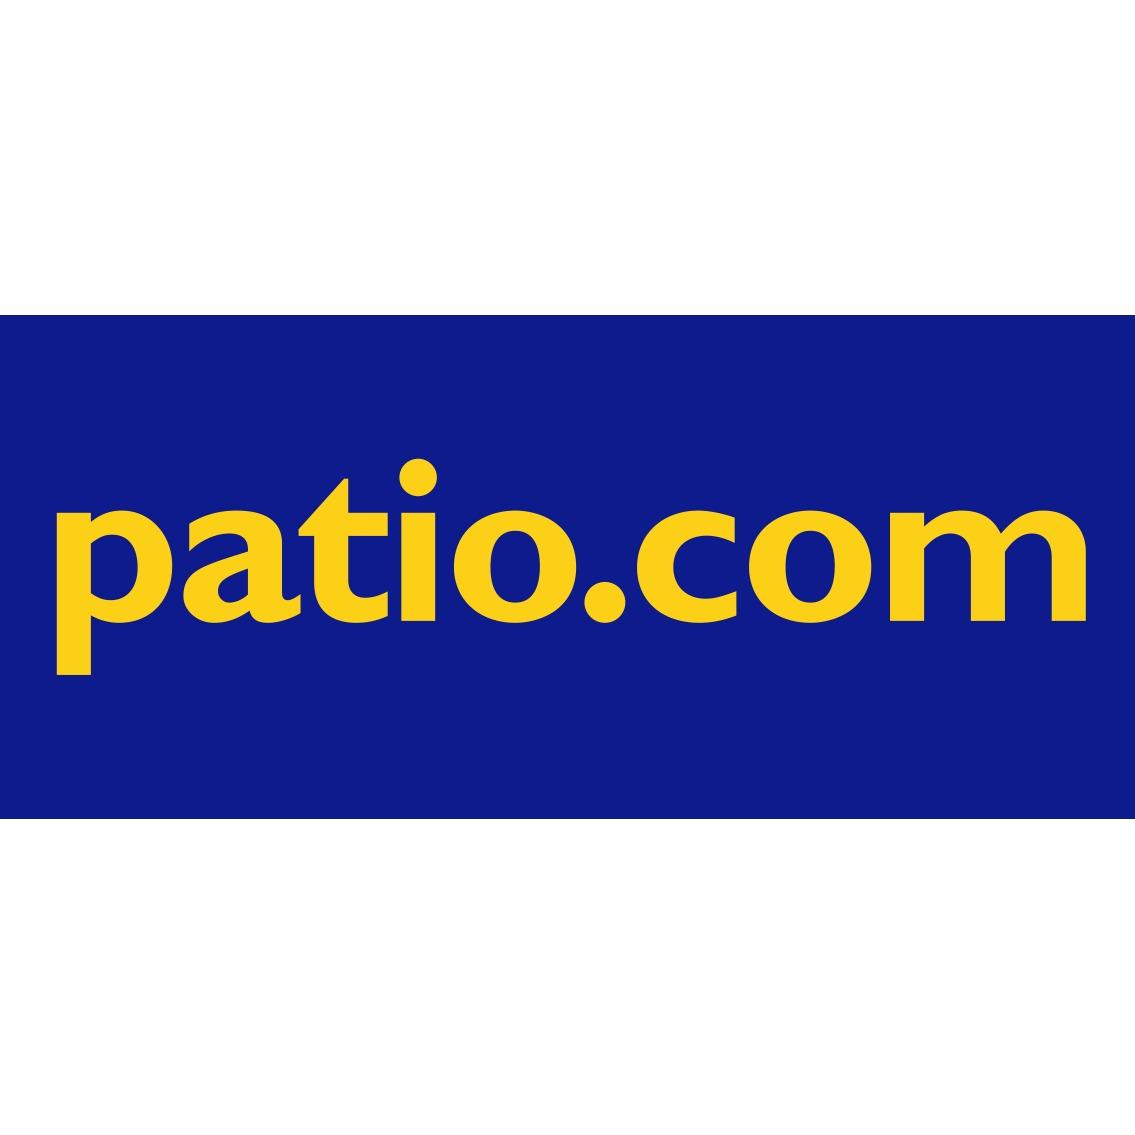 Patio.com Photo